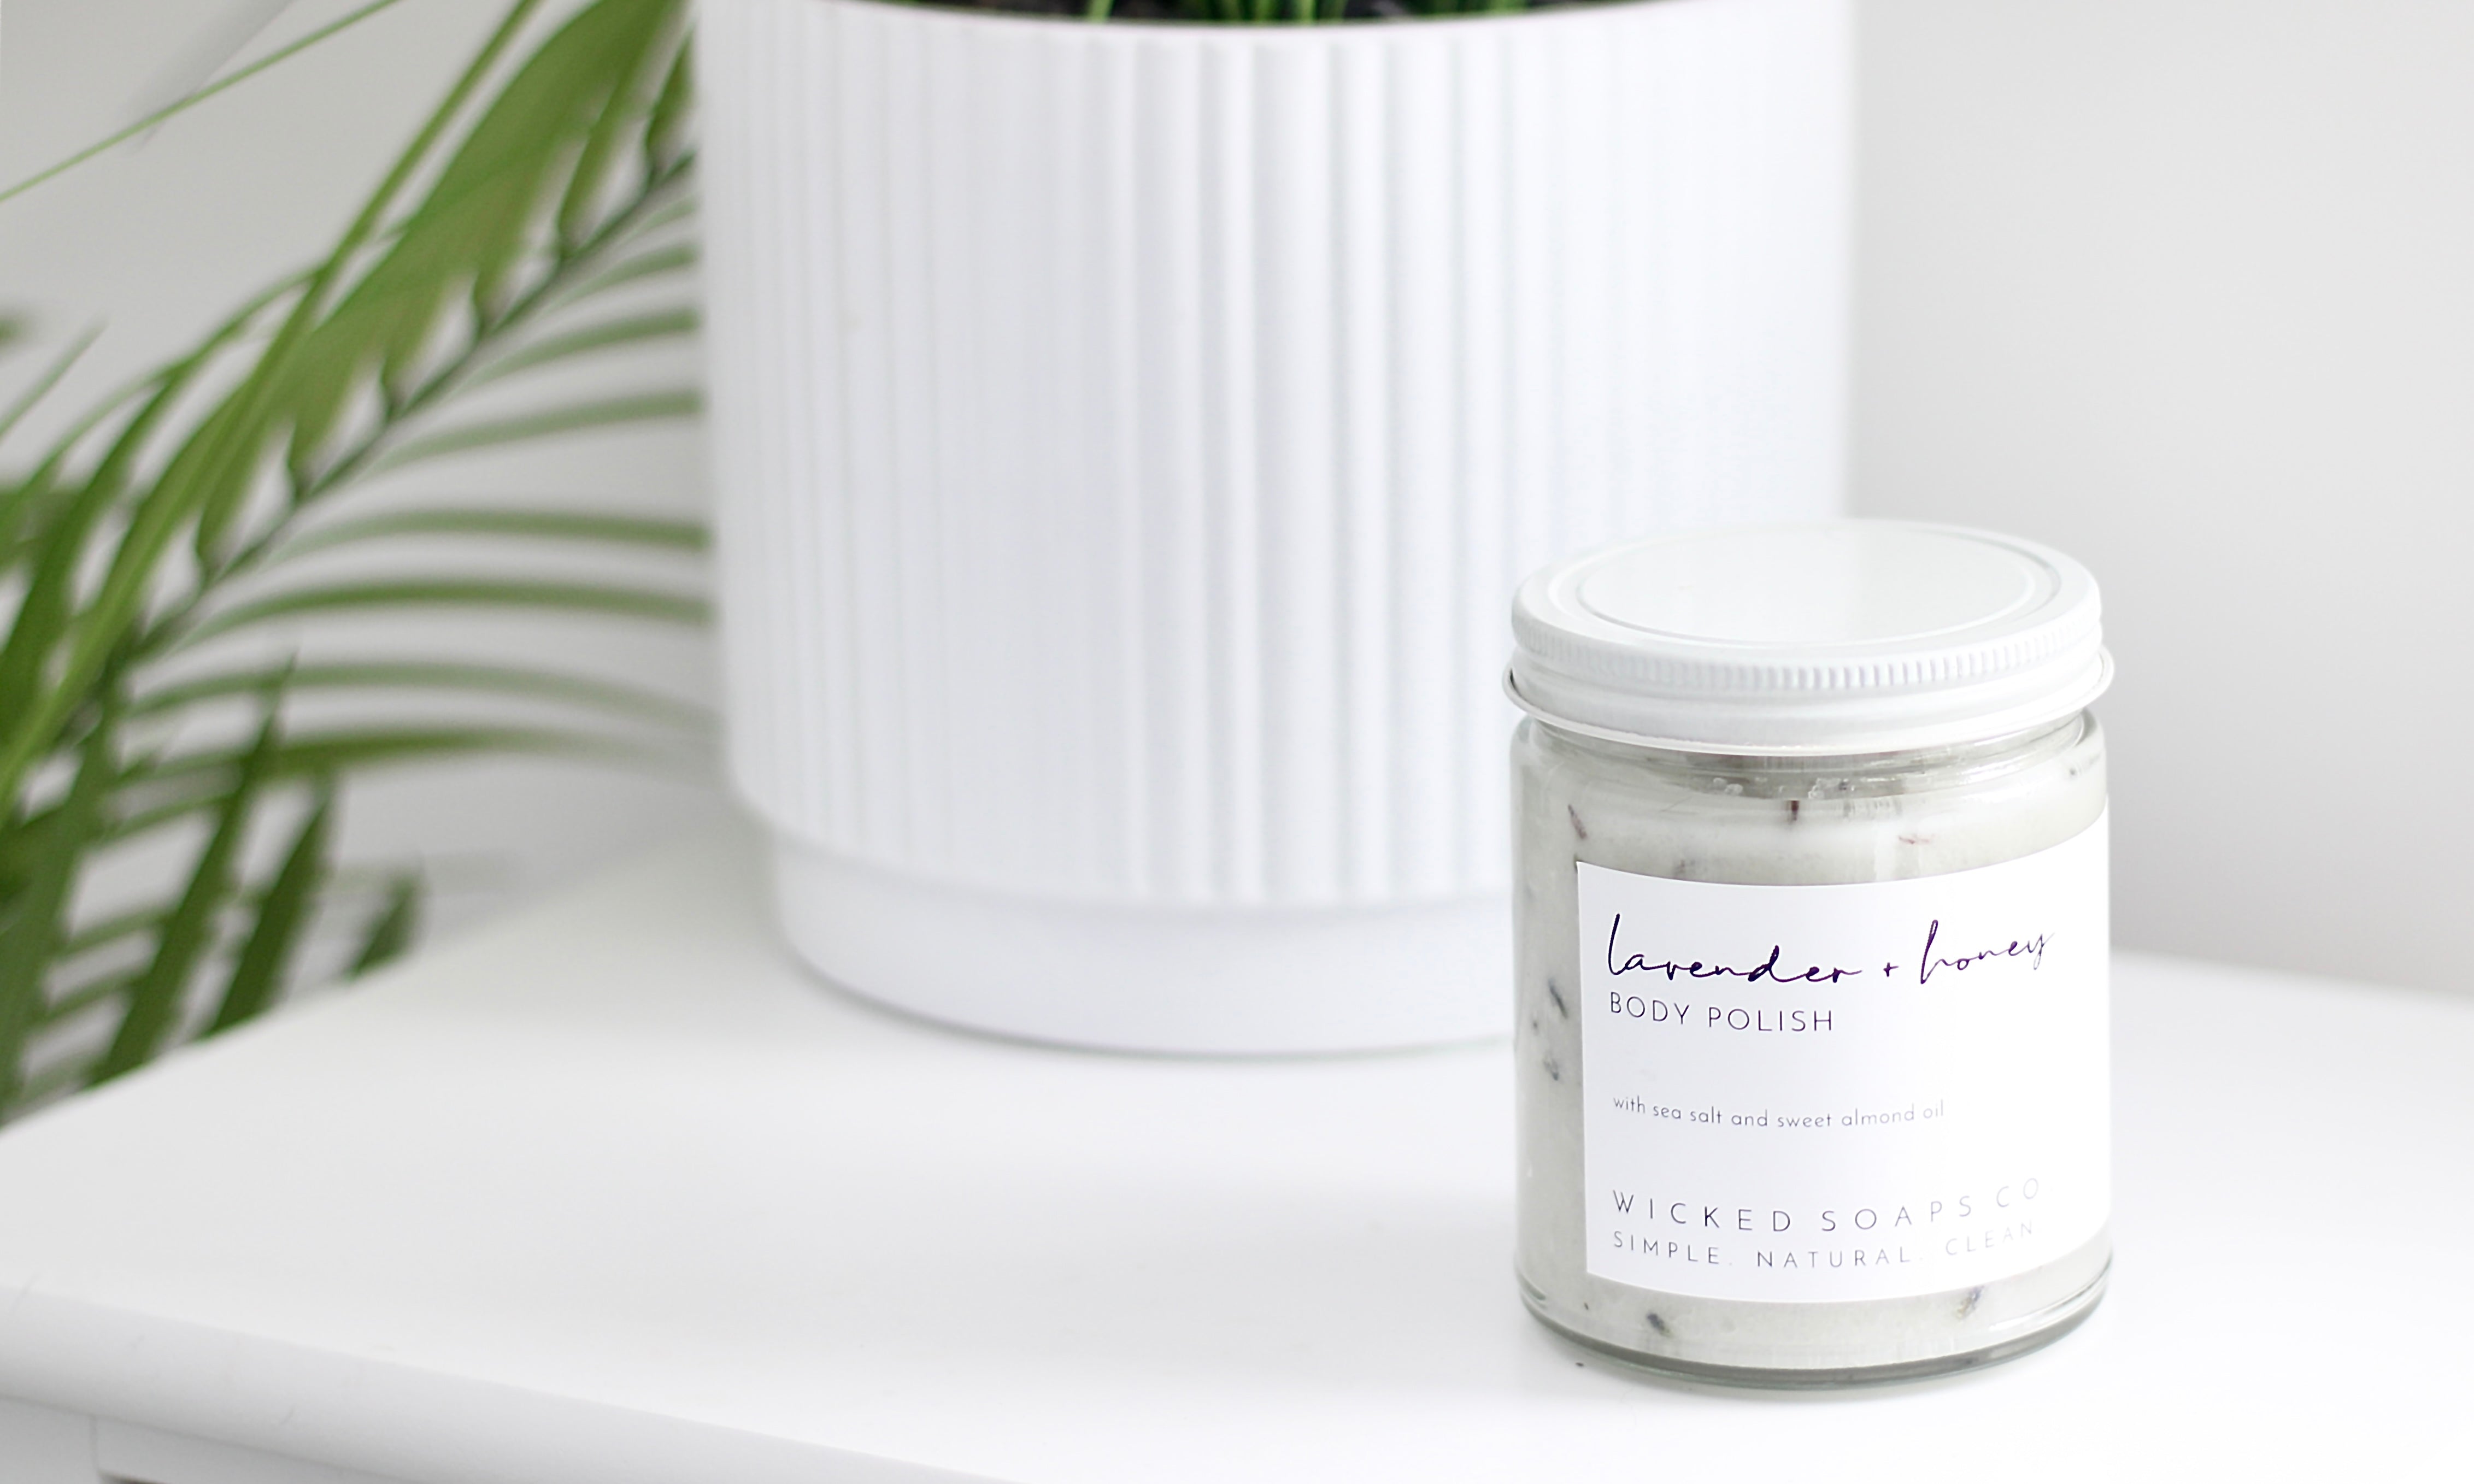 Lavender + Honey Body Polish